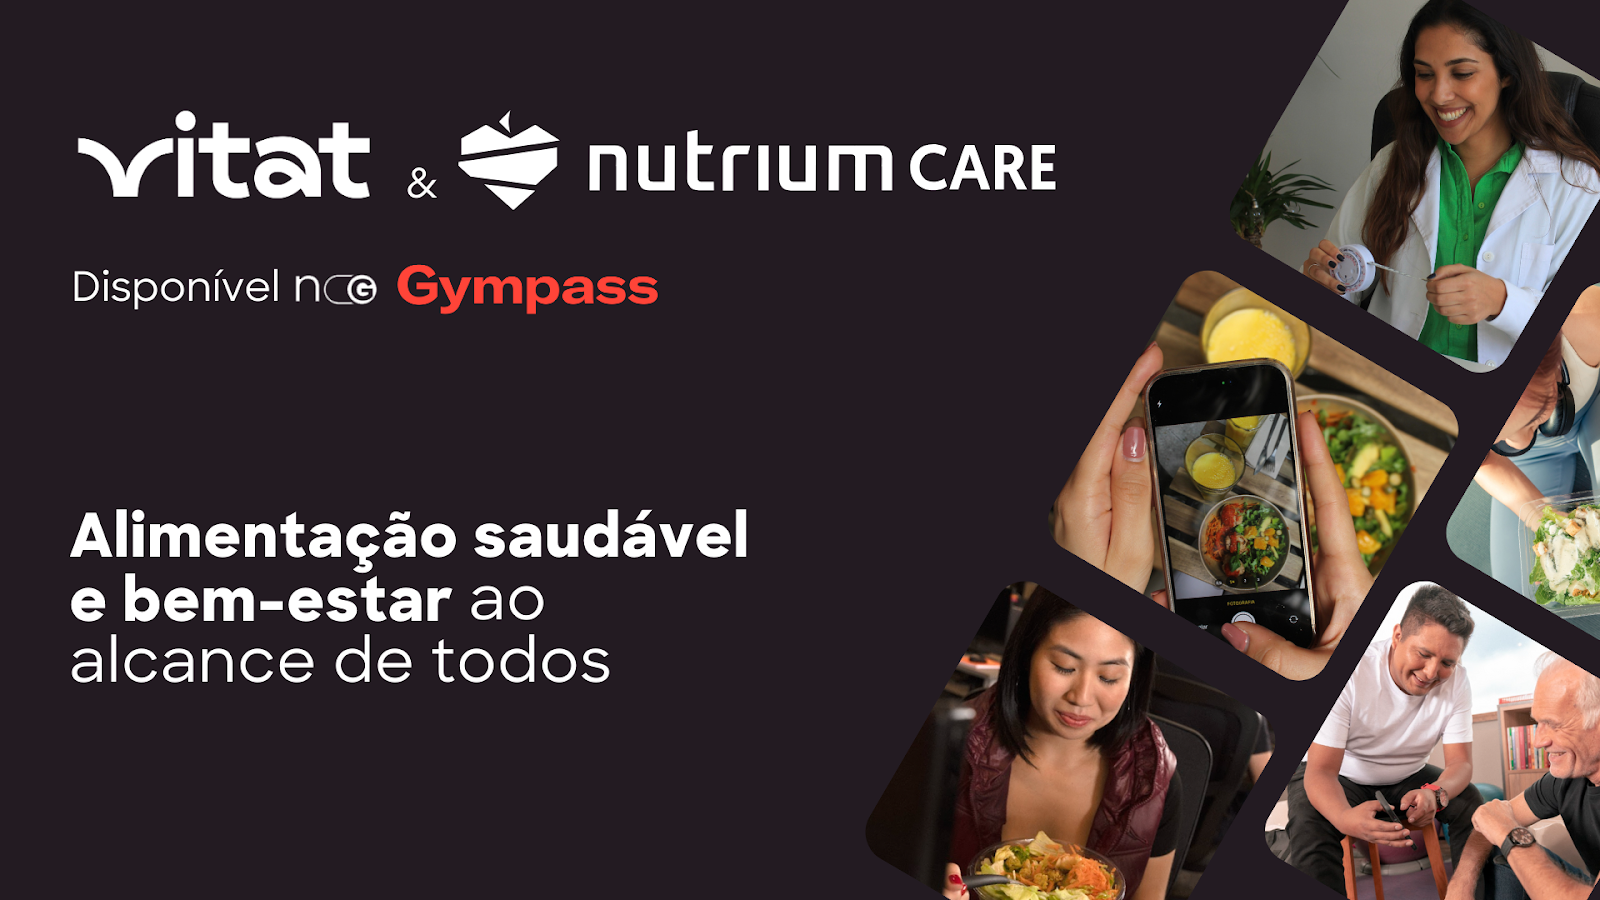 Gympass revoluciona oferta de nutricional com Nutrium Care e Vitat